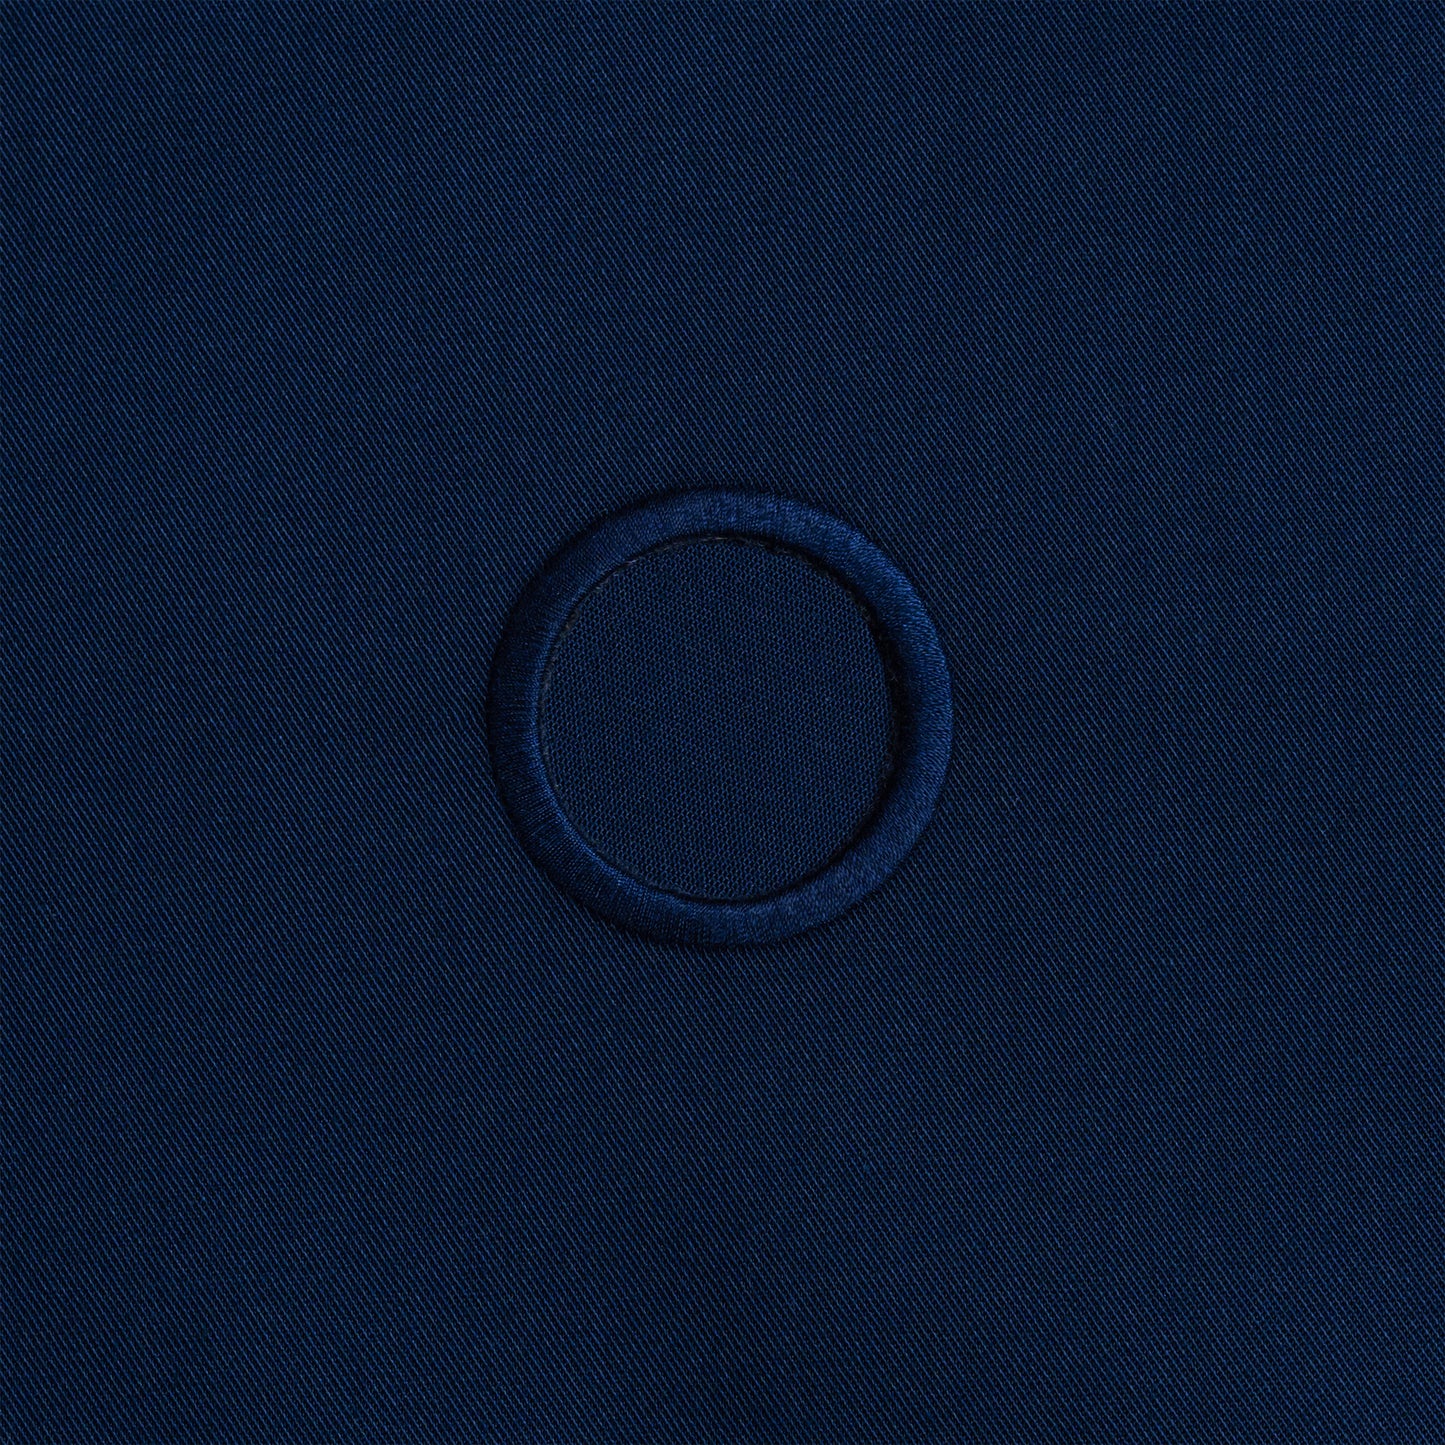 Panno per bottiglie da catering · Policotone blu scuro, 54 cm, foro centrale, cerchio cucito · Confezione da 2